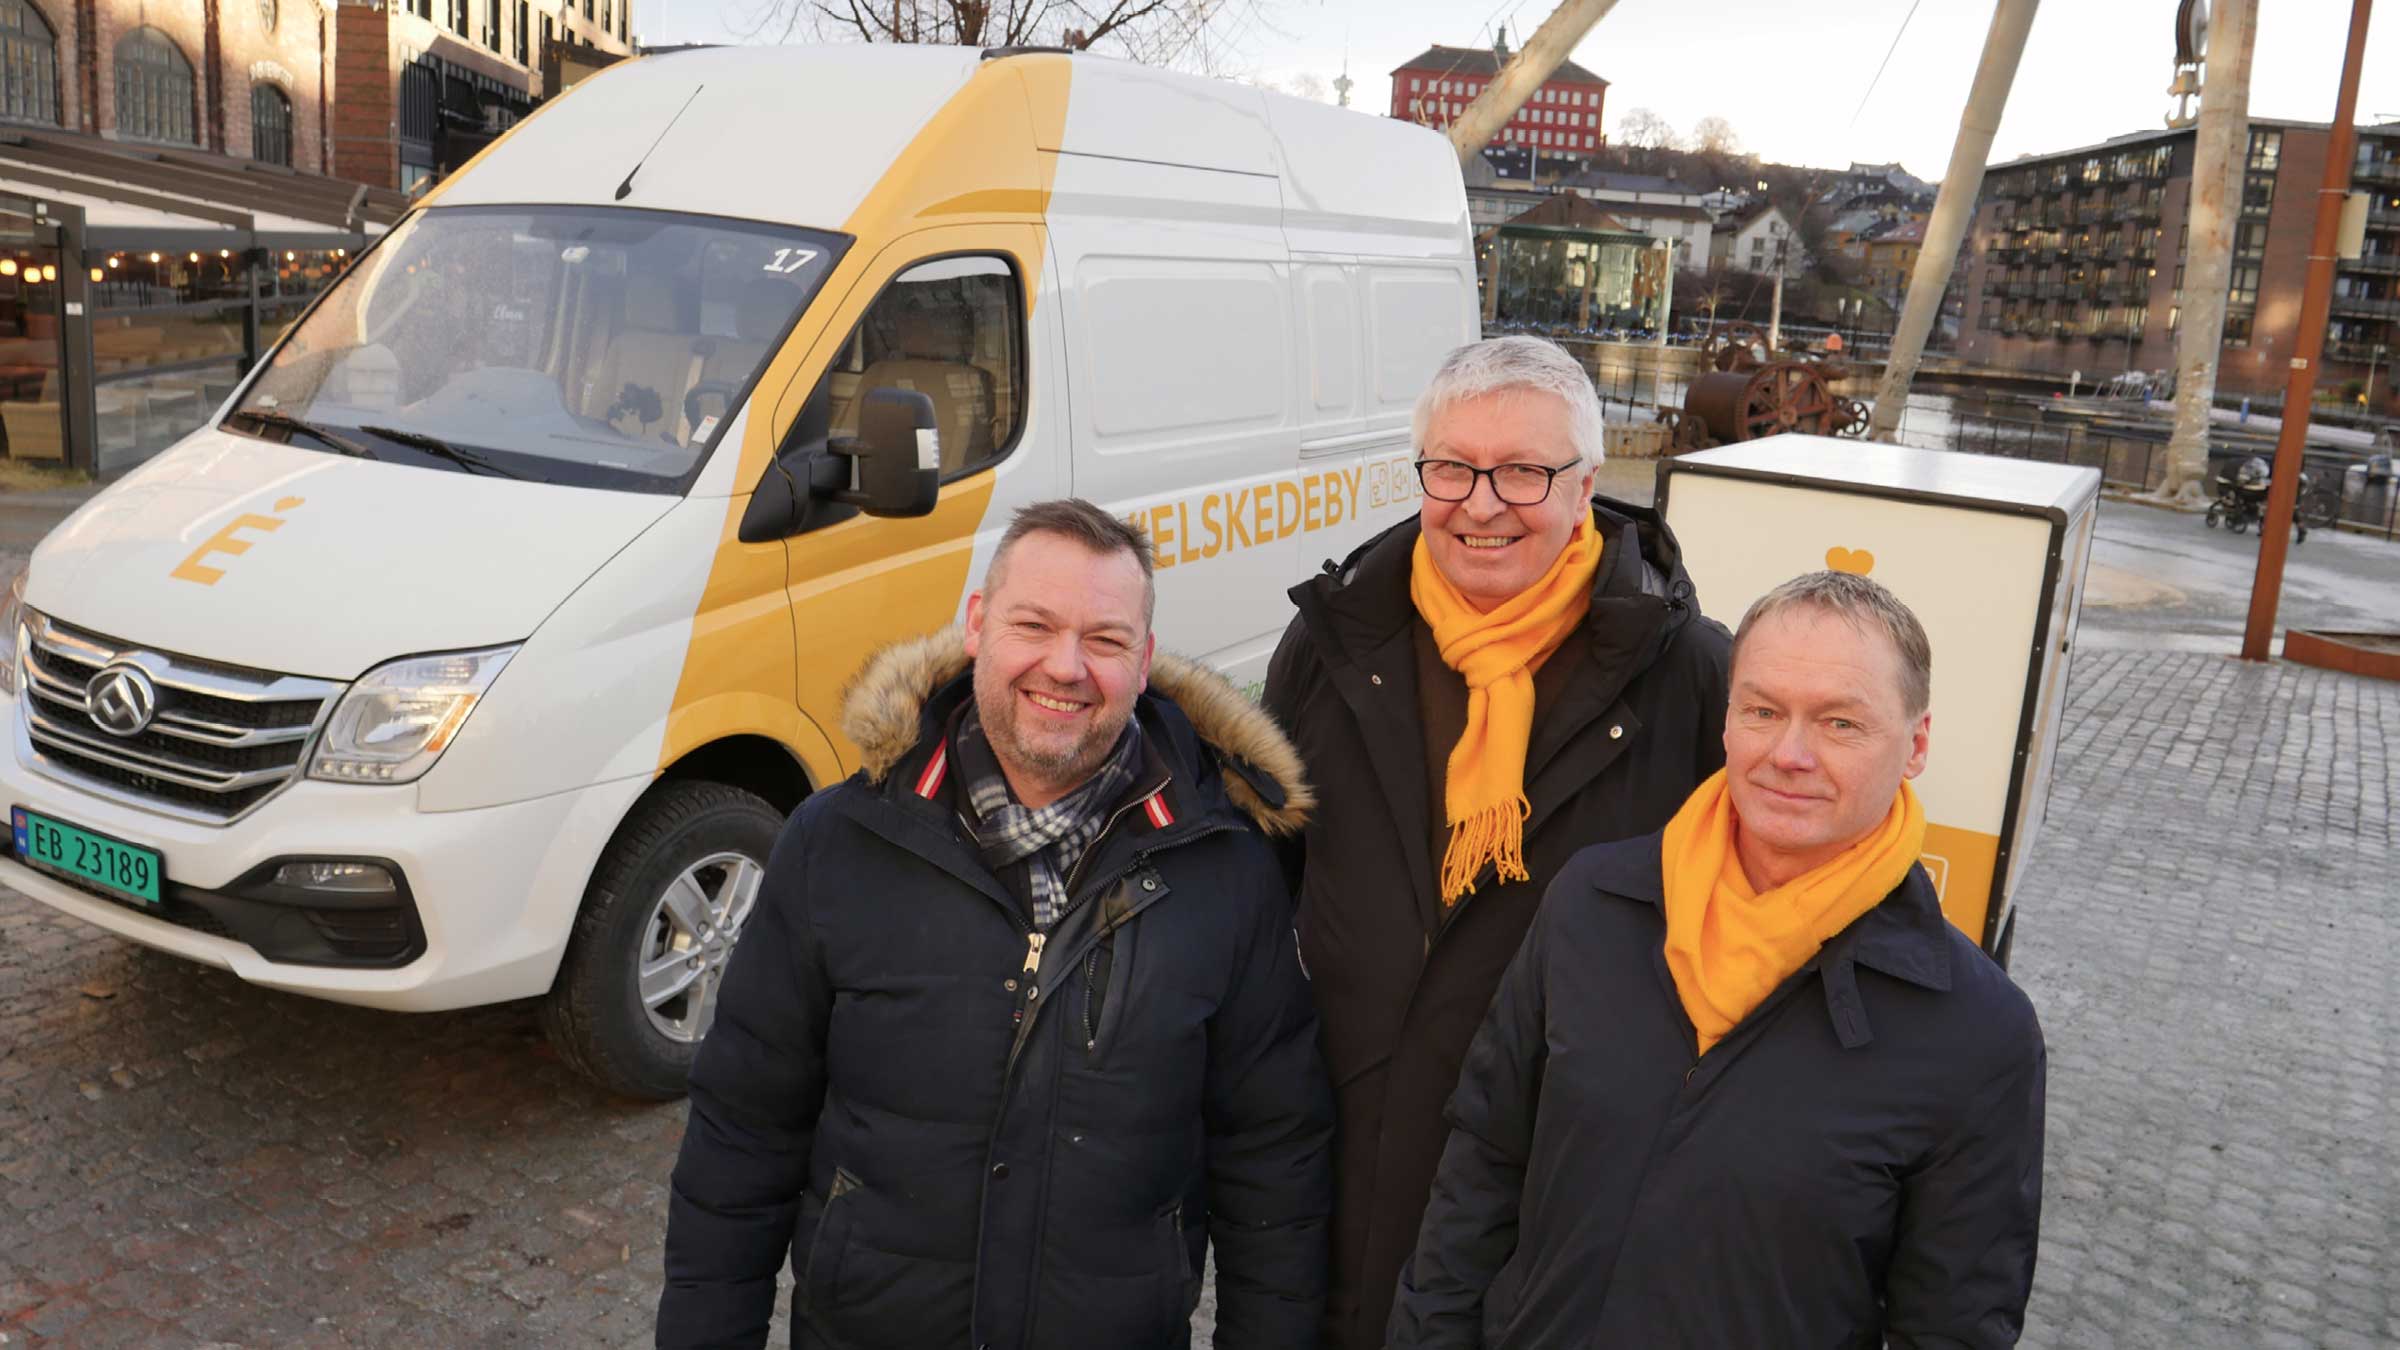 Mandag 13. januar ble Elskede by i Trondheim åpnet av lederen i bystyrets miljø- og næringskomite, Jørn Arve Flått.